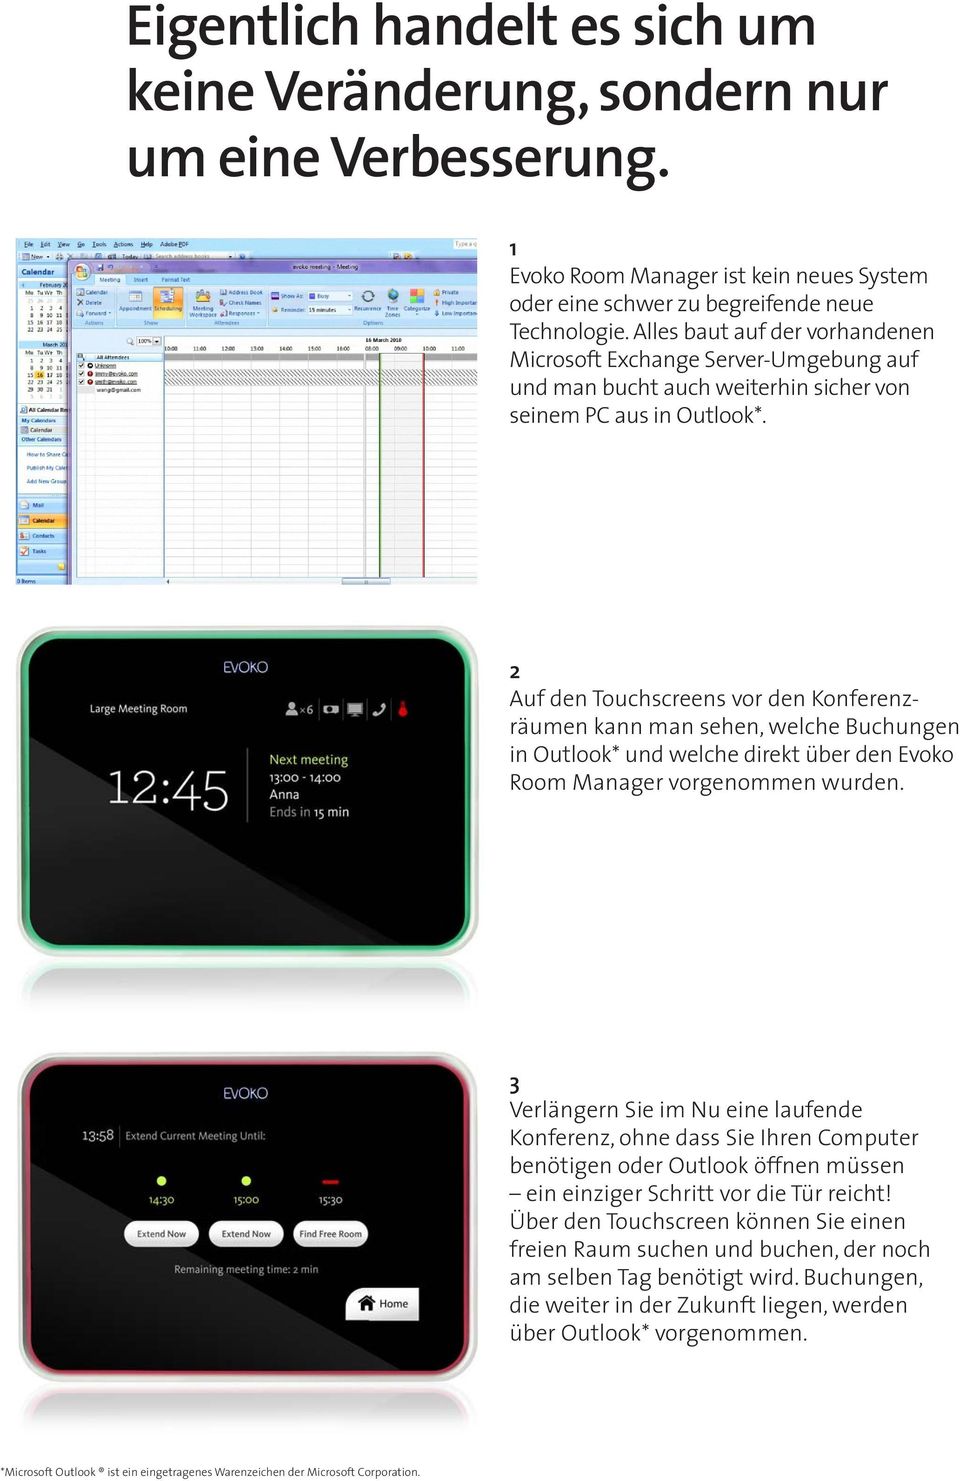 2 Auf den Touchscreens vor den Konferenzräumen kann man sehen, welche Buchungen in Outlook* und welche direkt über den Evoko Room Manager vorgenommen wurden.